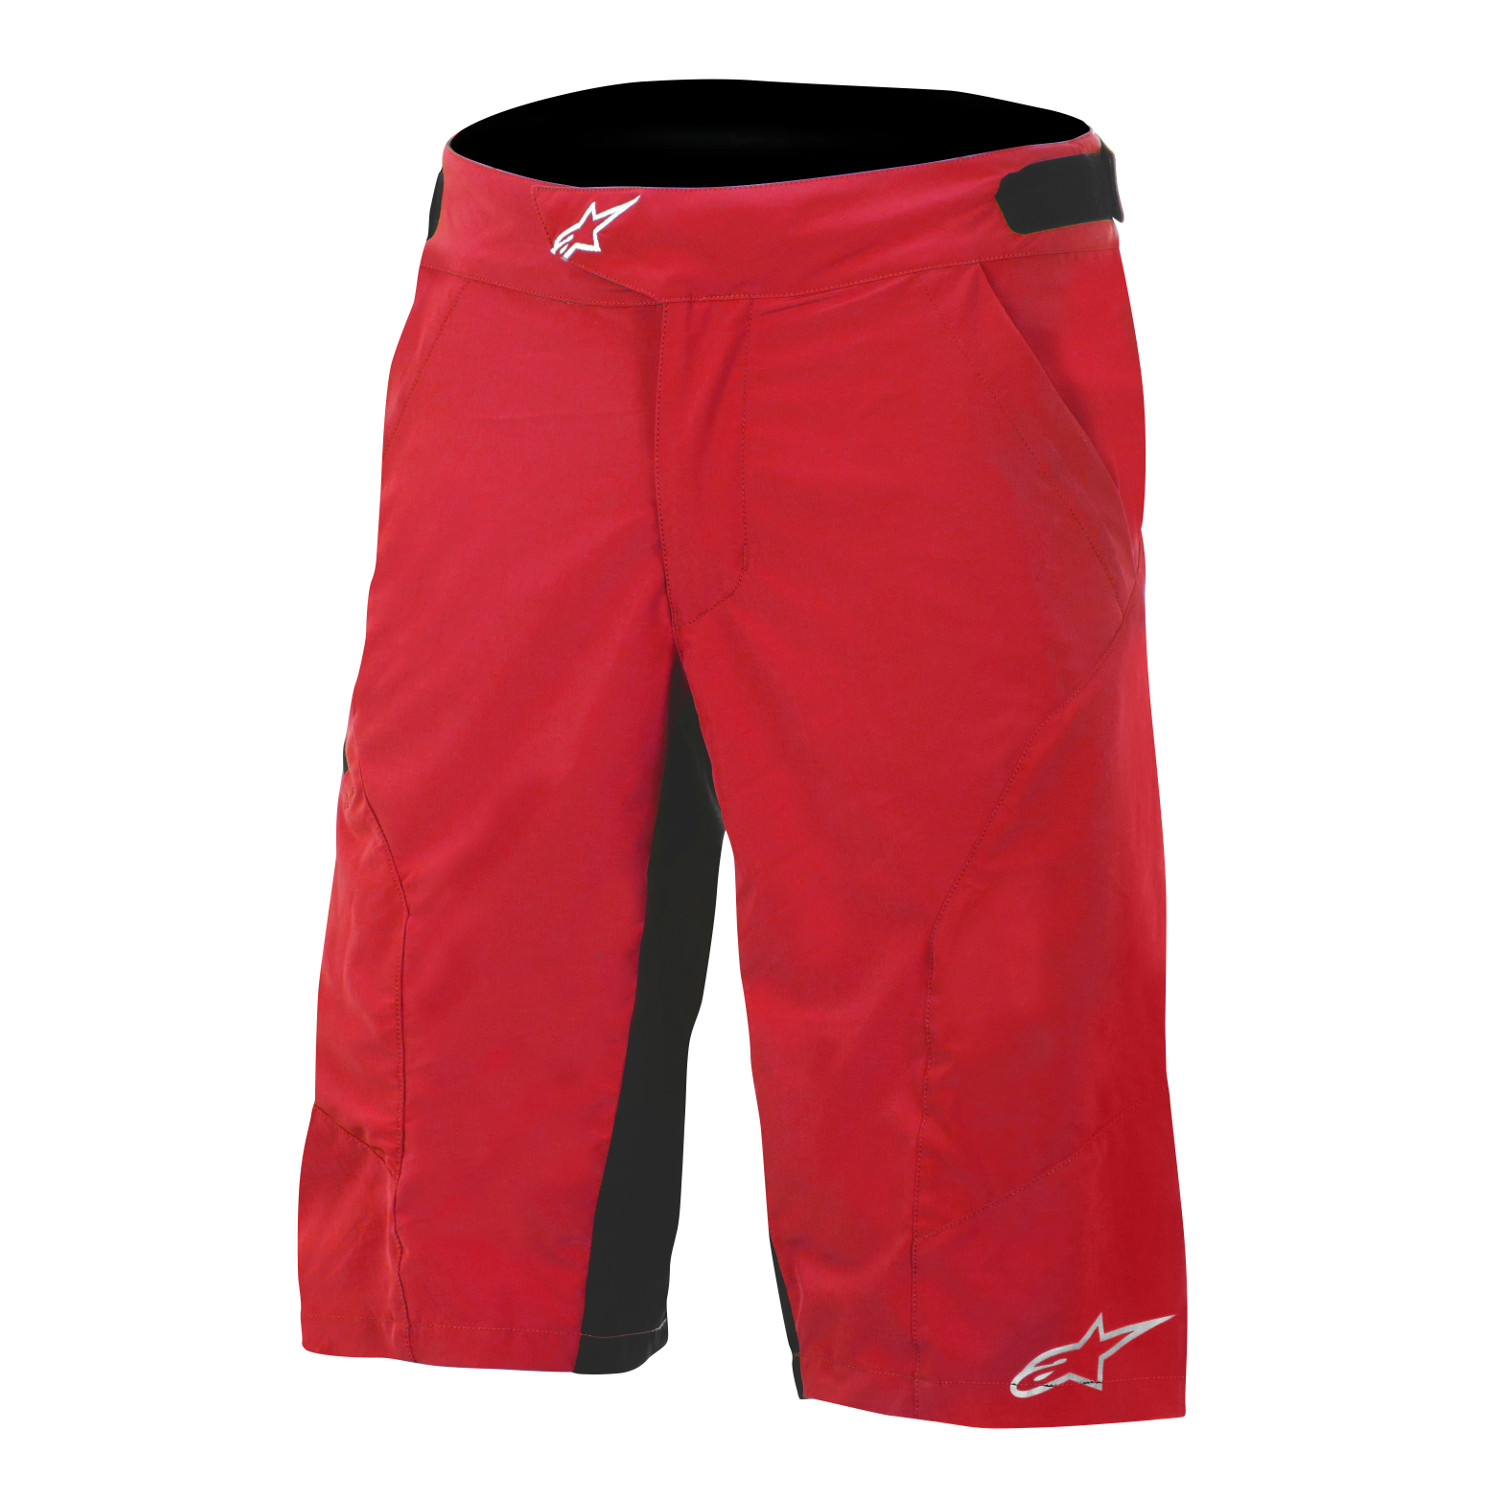 Alpinestars Shorts Hyperlight 2 Red/Black